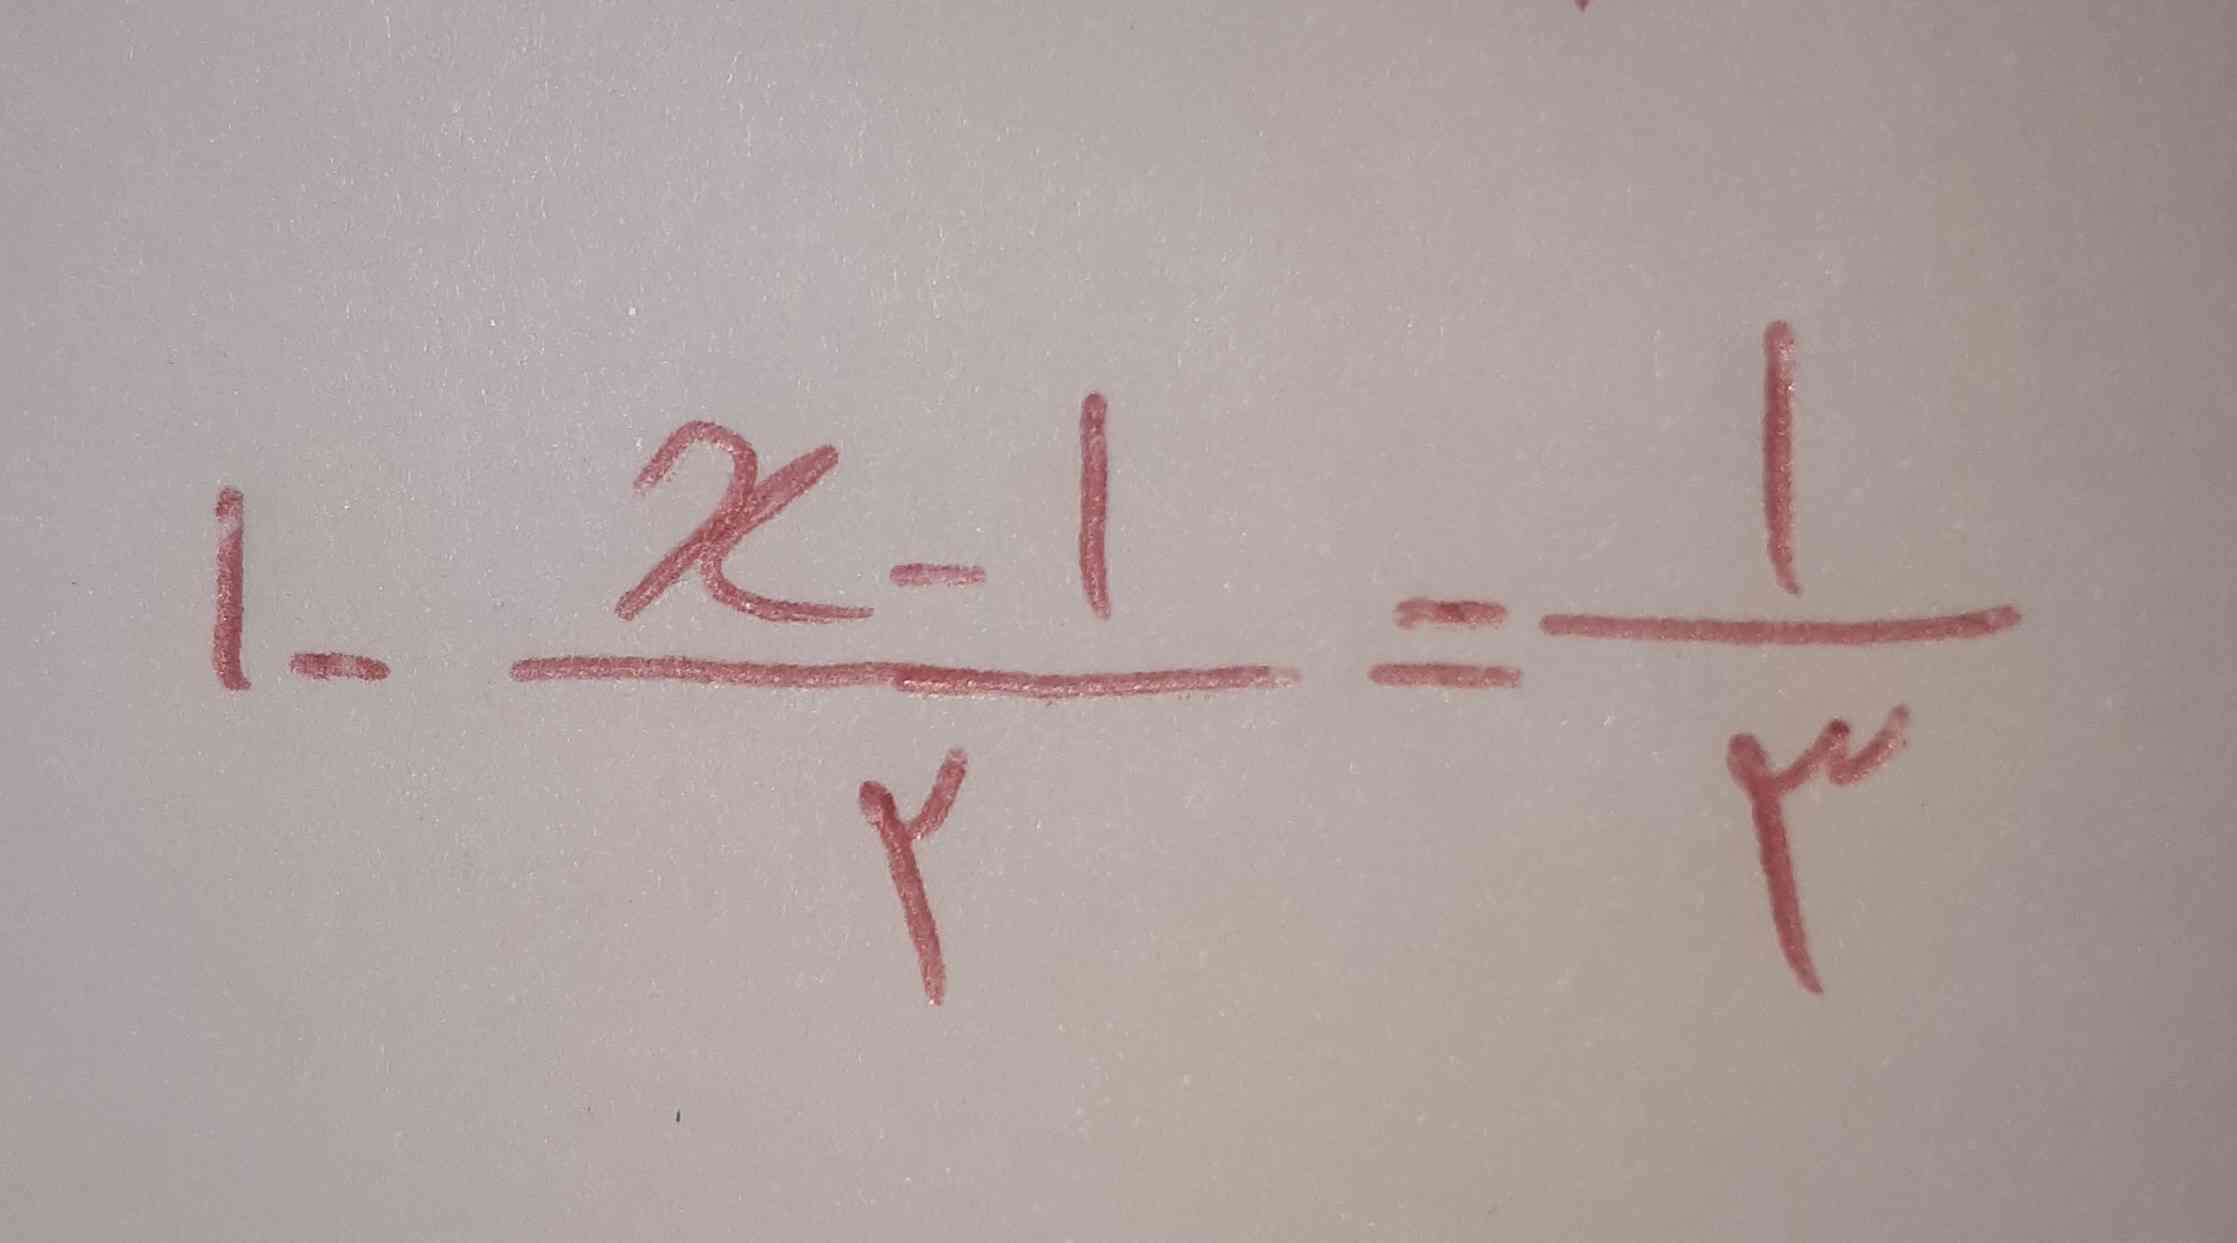 این معادله چطور حل میشه؟
